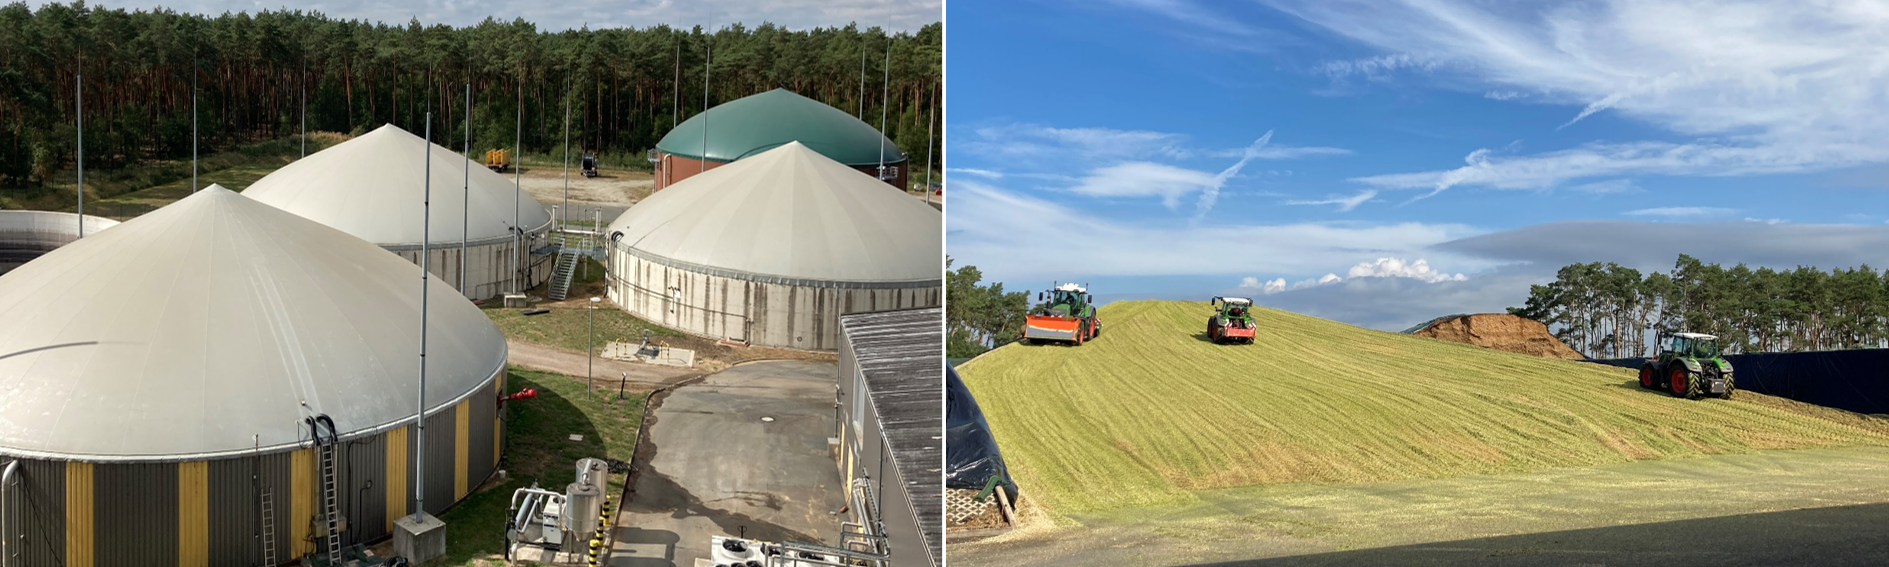 Fotos der Biogasanlage Abwasserverband Braunschweig